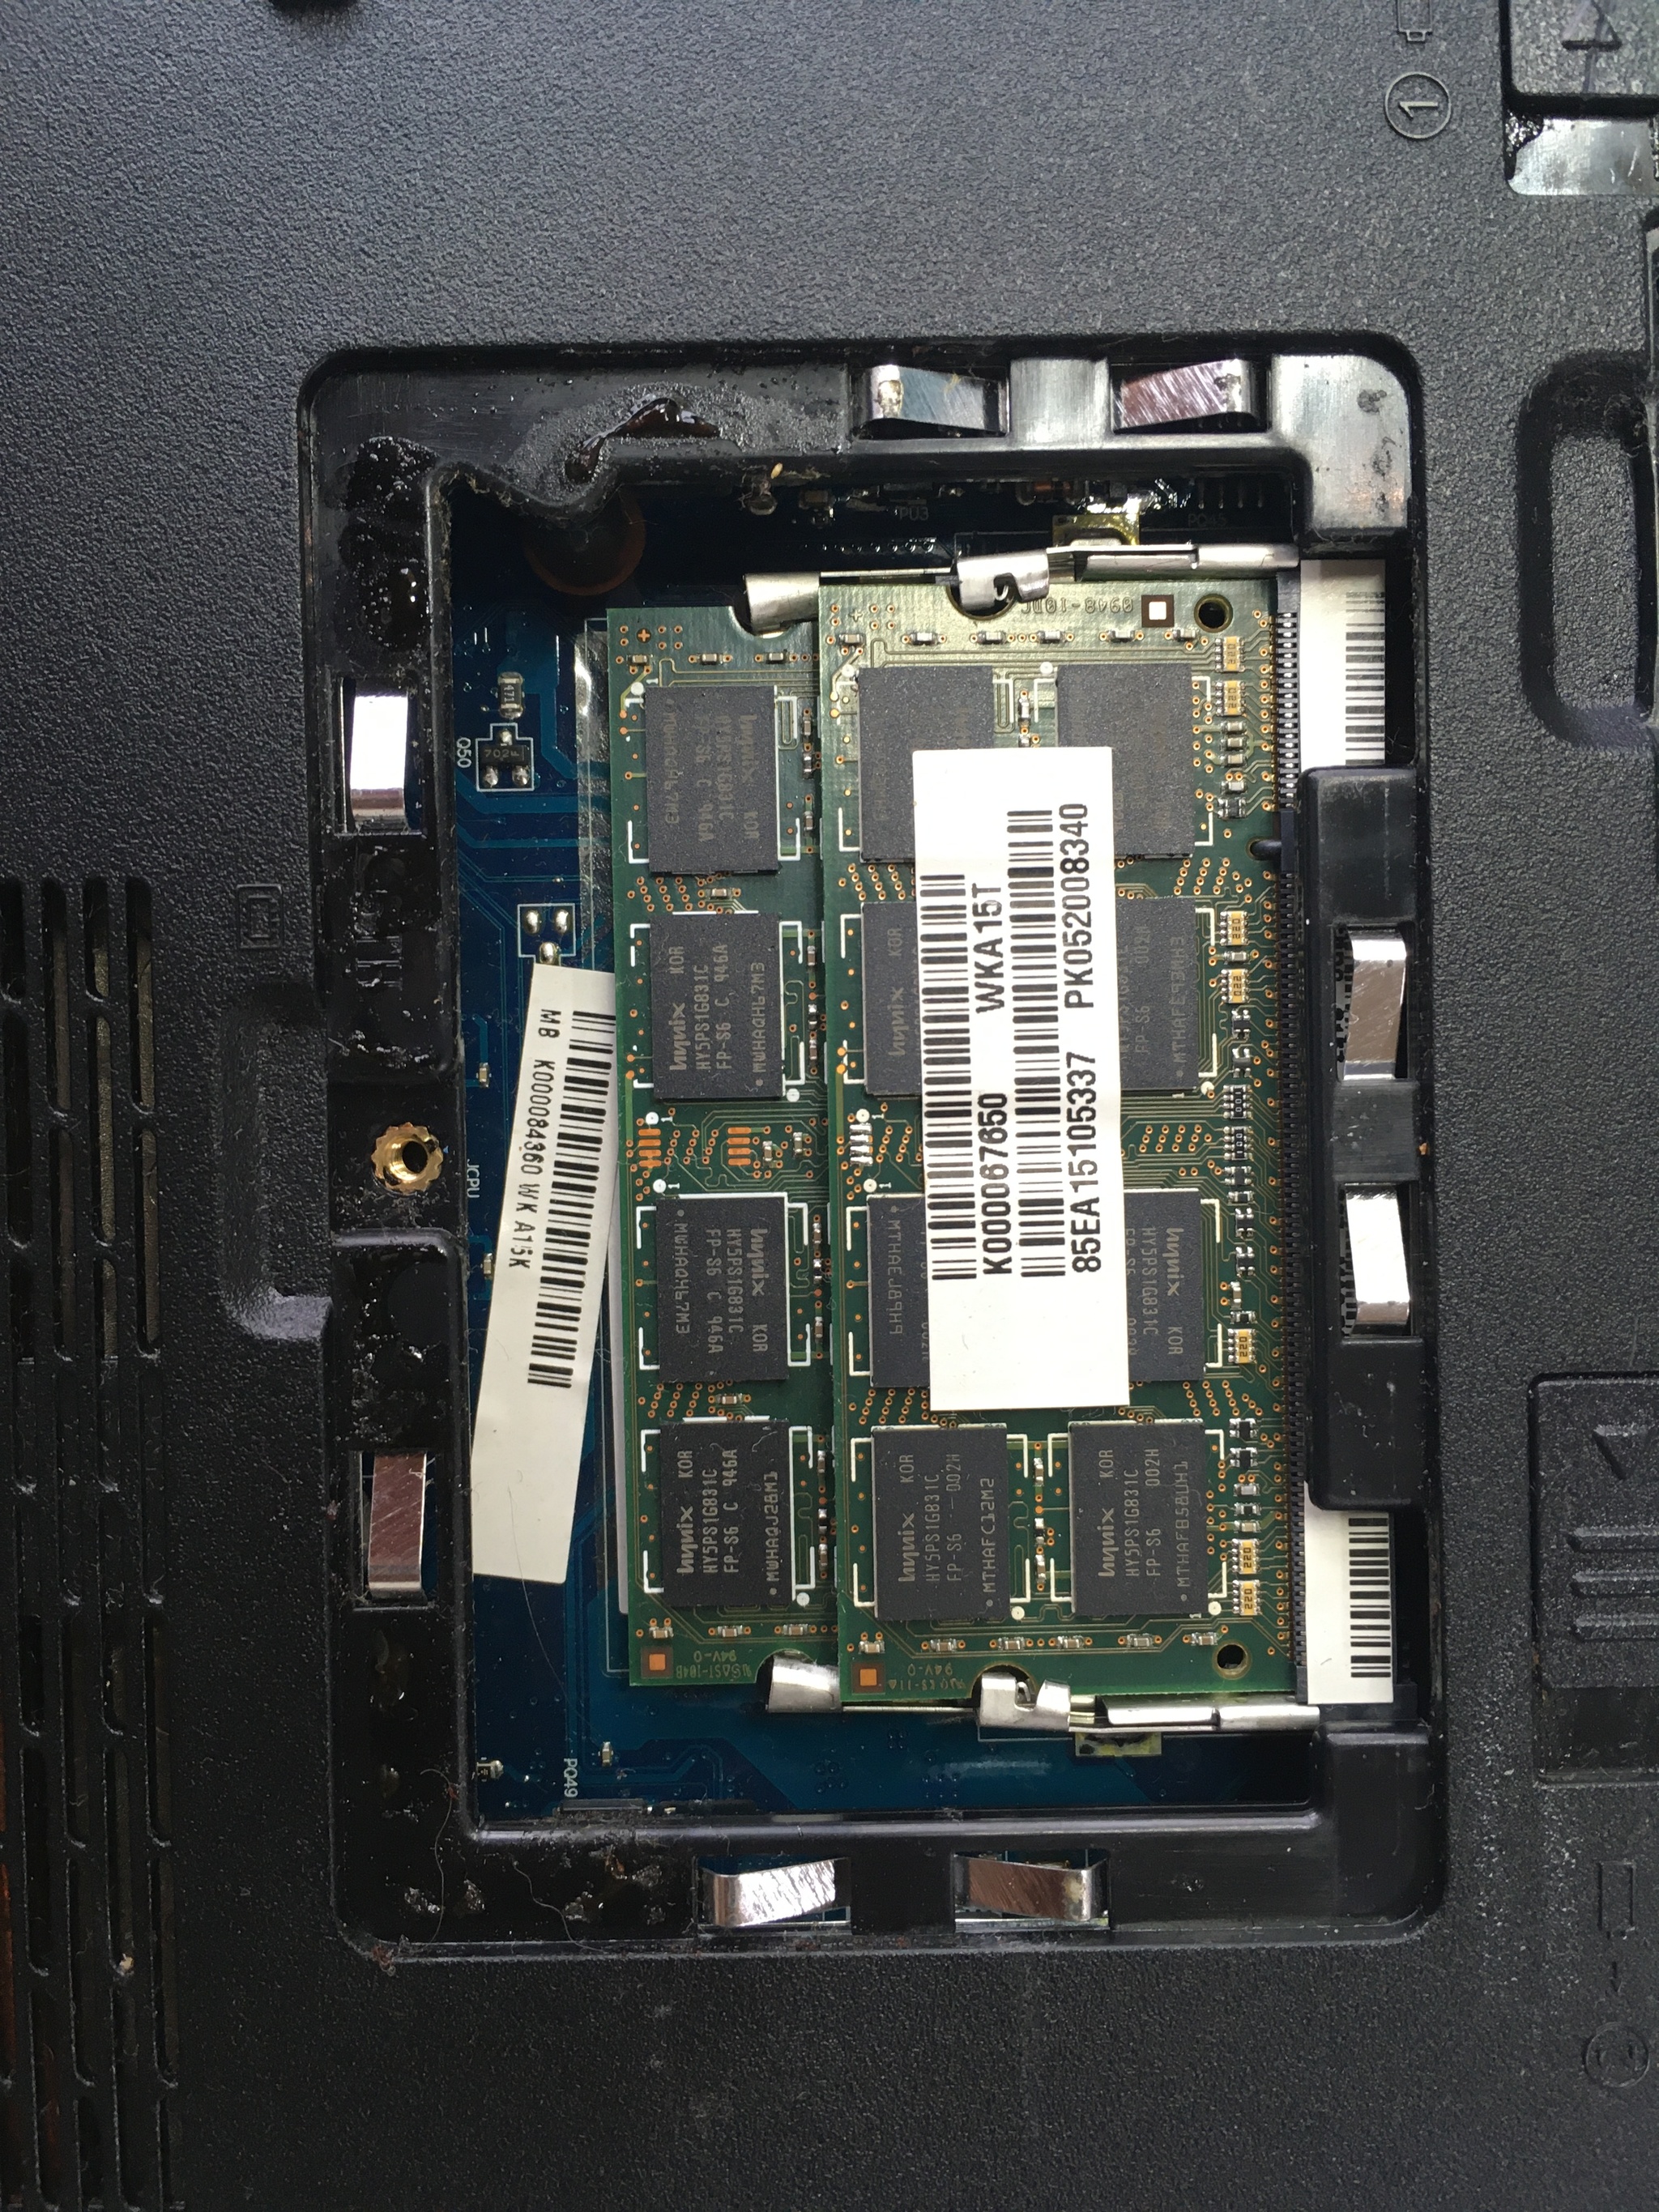 Repair Toshiba L500 - My, Laptop Repair, Motherboard, Flooding, NorthBridge, Chip, Bga, Bga, Longpost